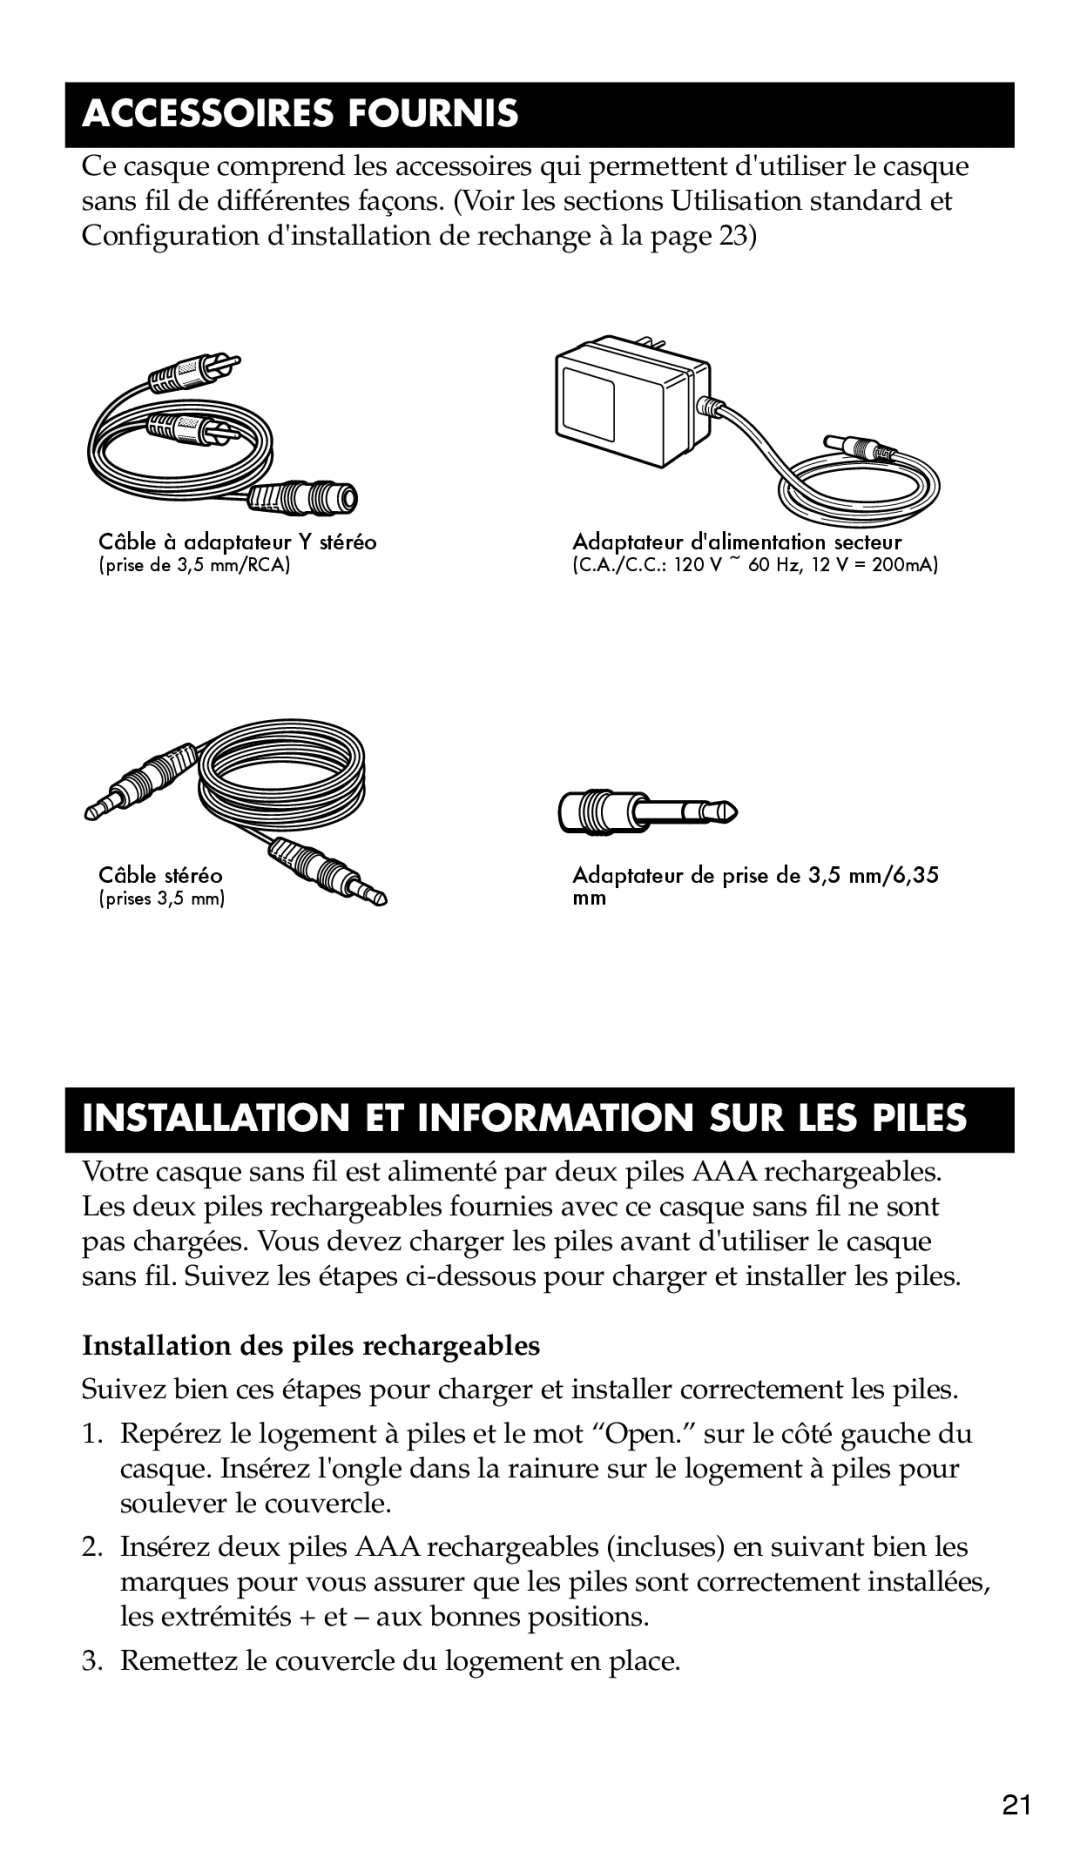 RCA WHP170, WHP175 Accessoires Fournis, Installation Et Information Sur Les Piles, Installation des piles rechargeables 